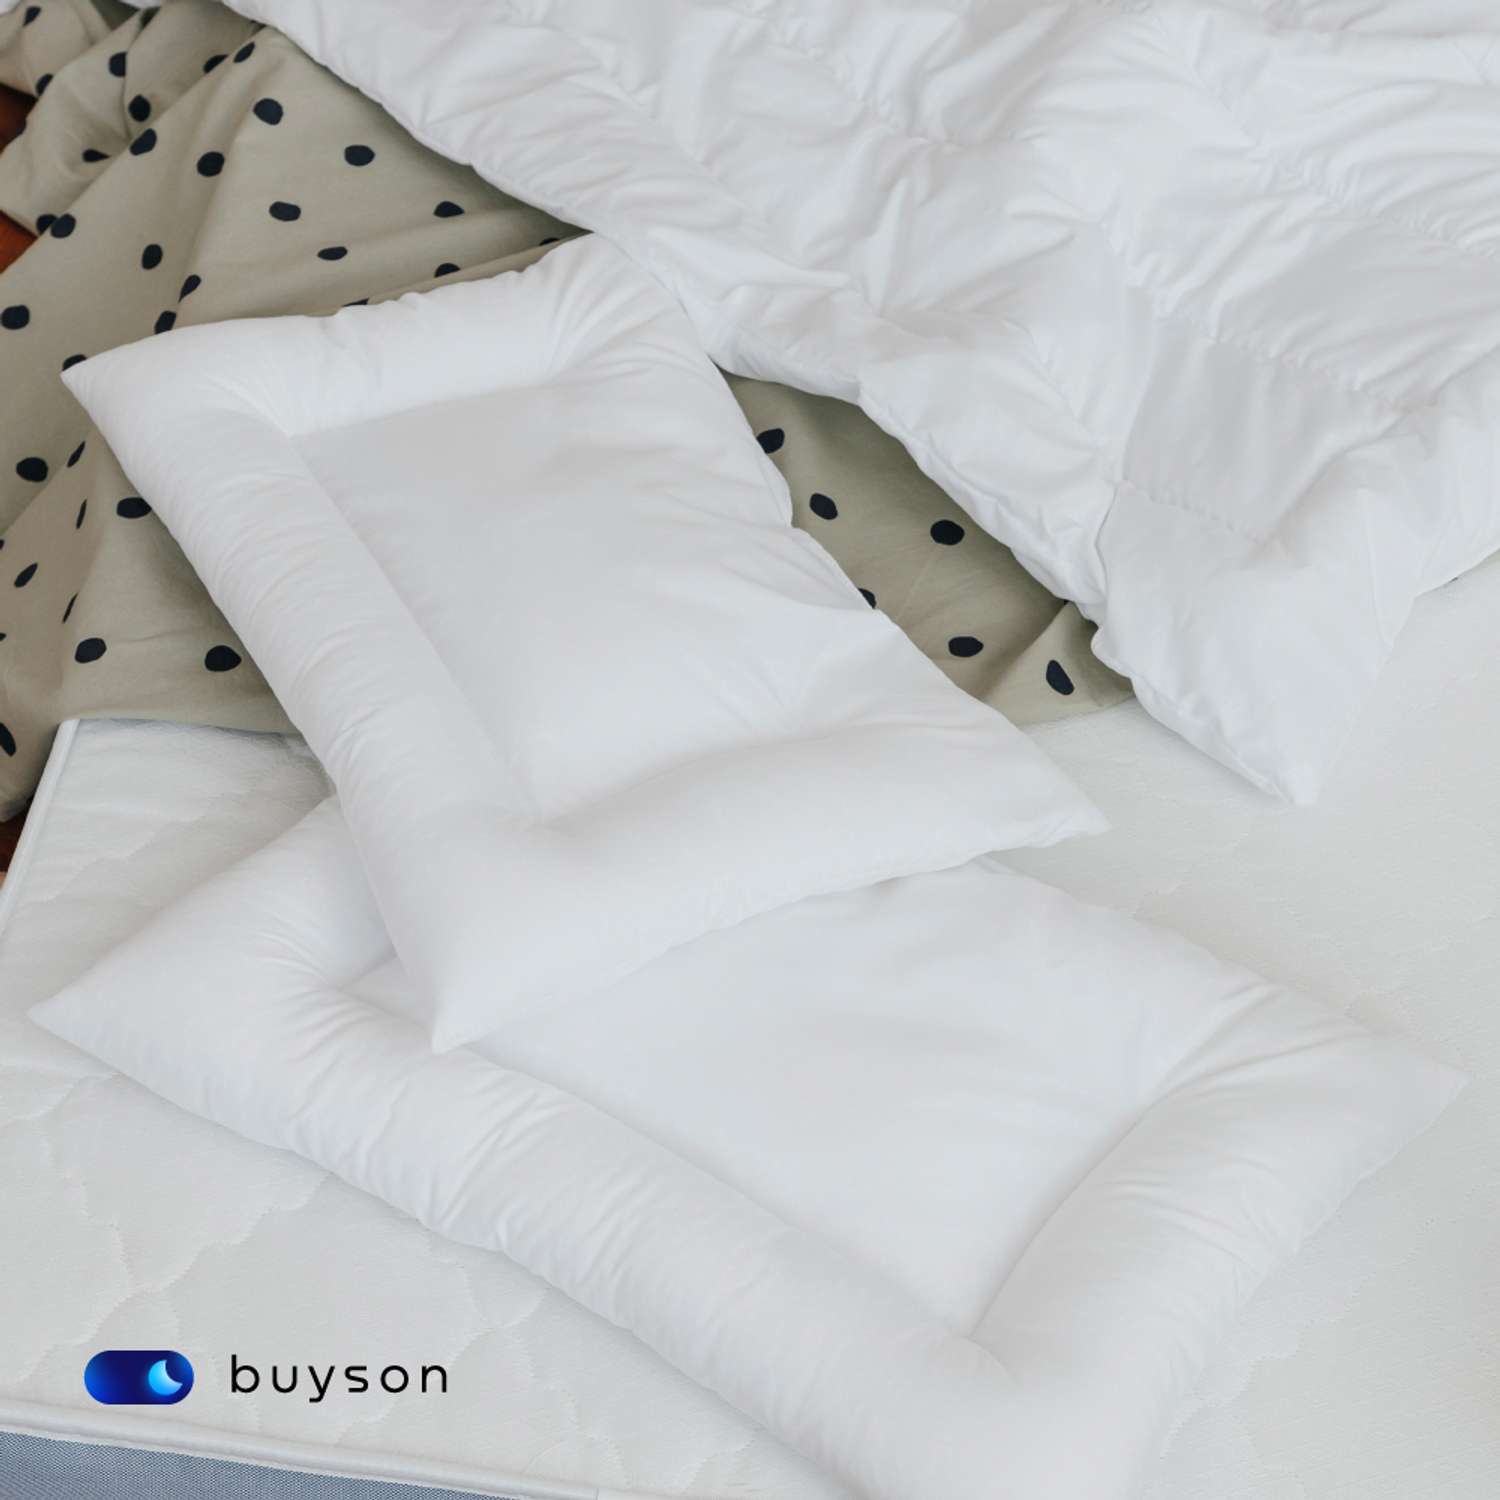 Анатомическая подушка buyson BuySweet от 3 до 5 лет 35х55 см высота 6 см - фото 4